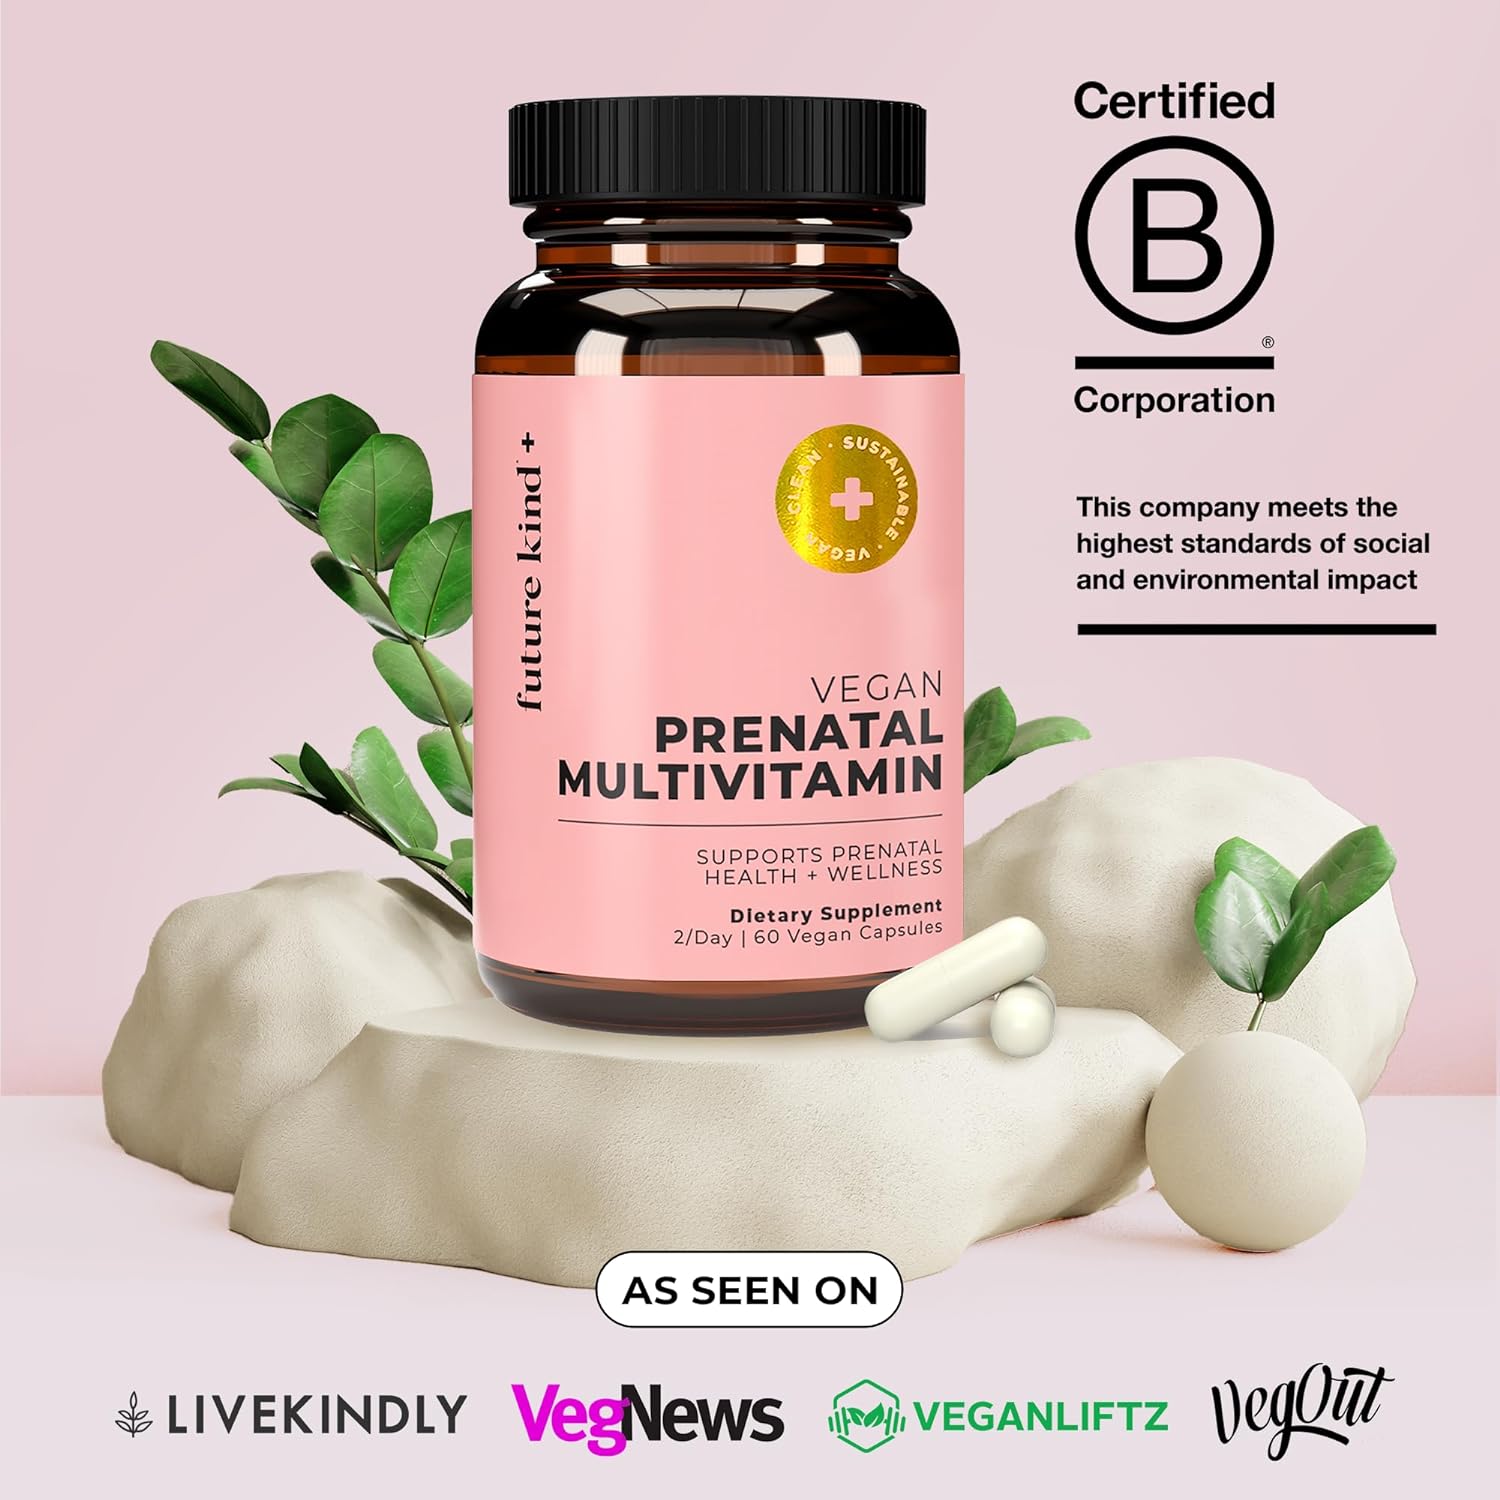 Future Kind Vegan Prenatal Vitamin - (60ct) Prenatal Vitamins with DHA  L-MethylFolate in Glass Bottle - Prenatal Folate Supplement for Women with Vitamin D  E, Iron, Biotin, Gluten-Free  Non-GMO